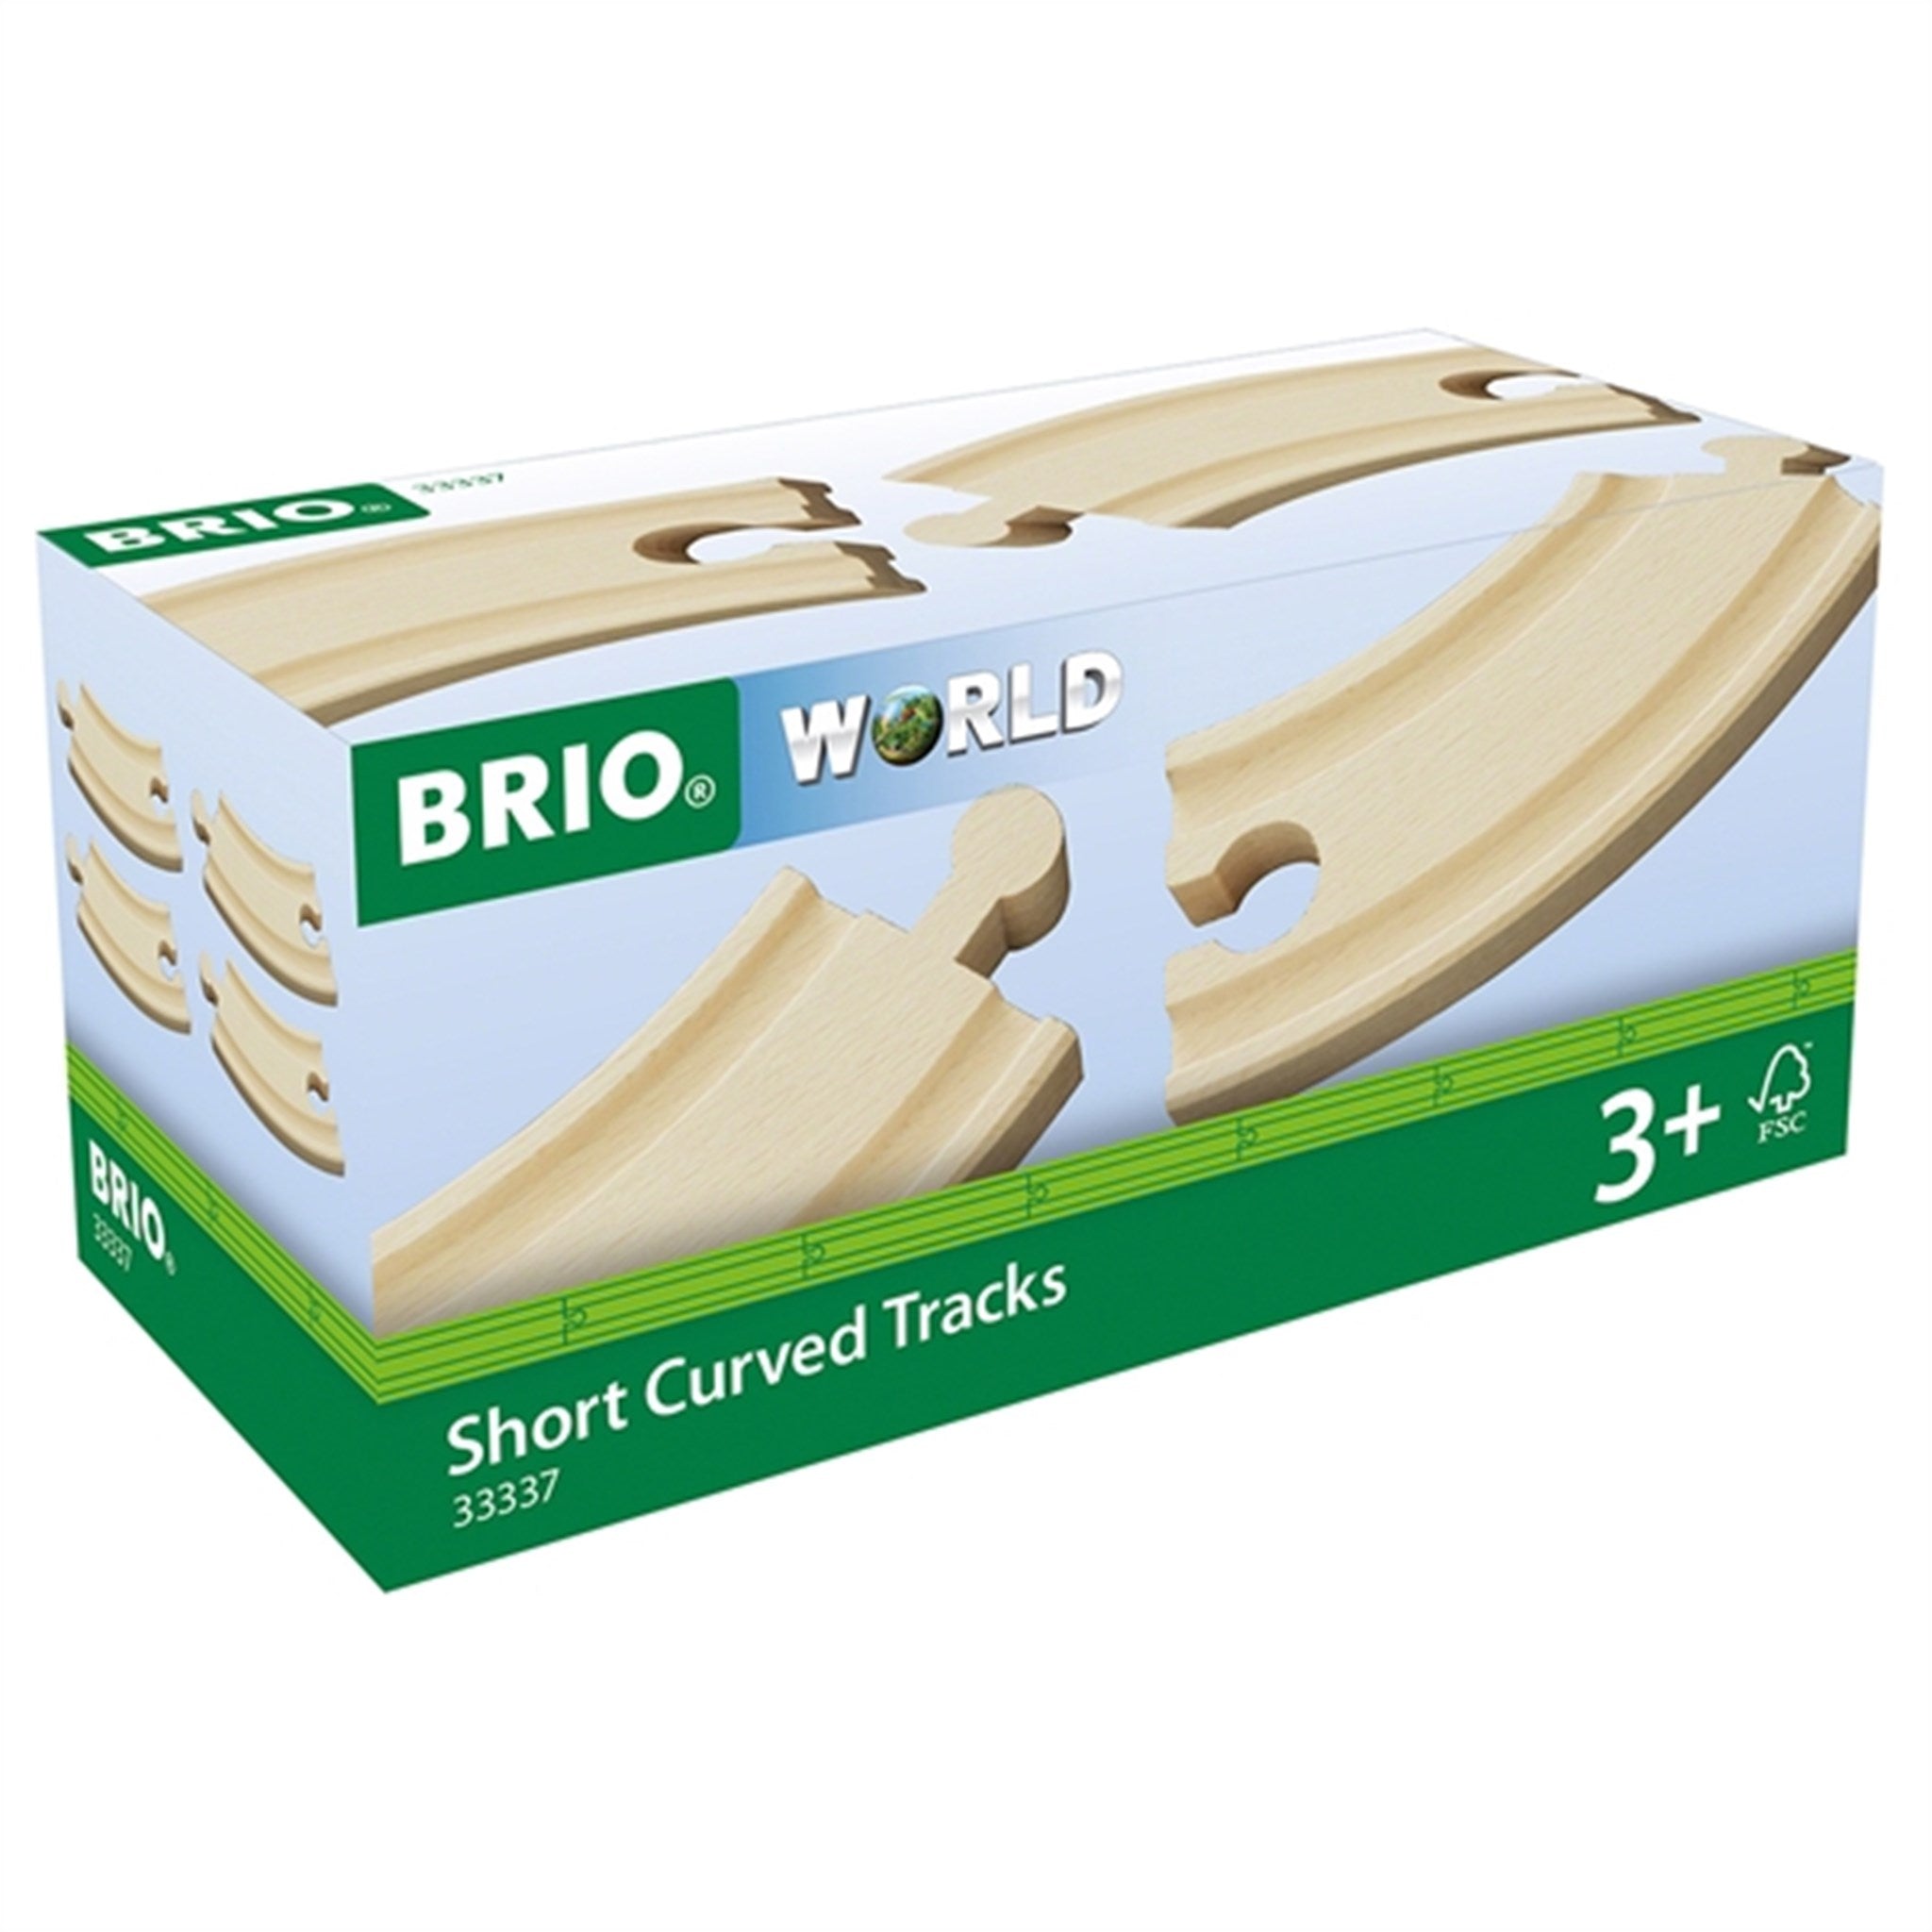 BRIO® Short Curved Tracks 2